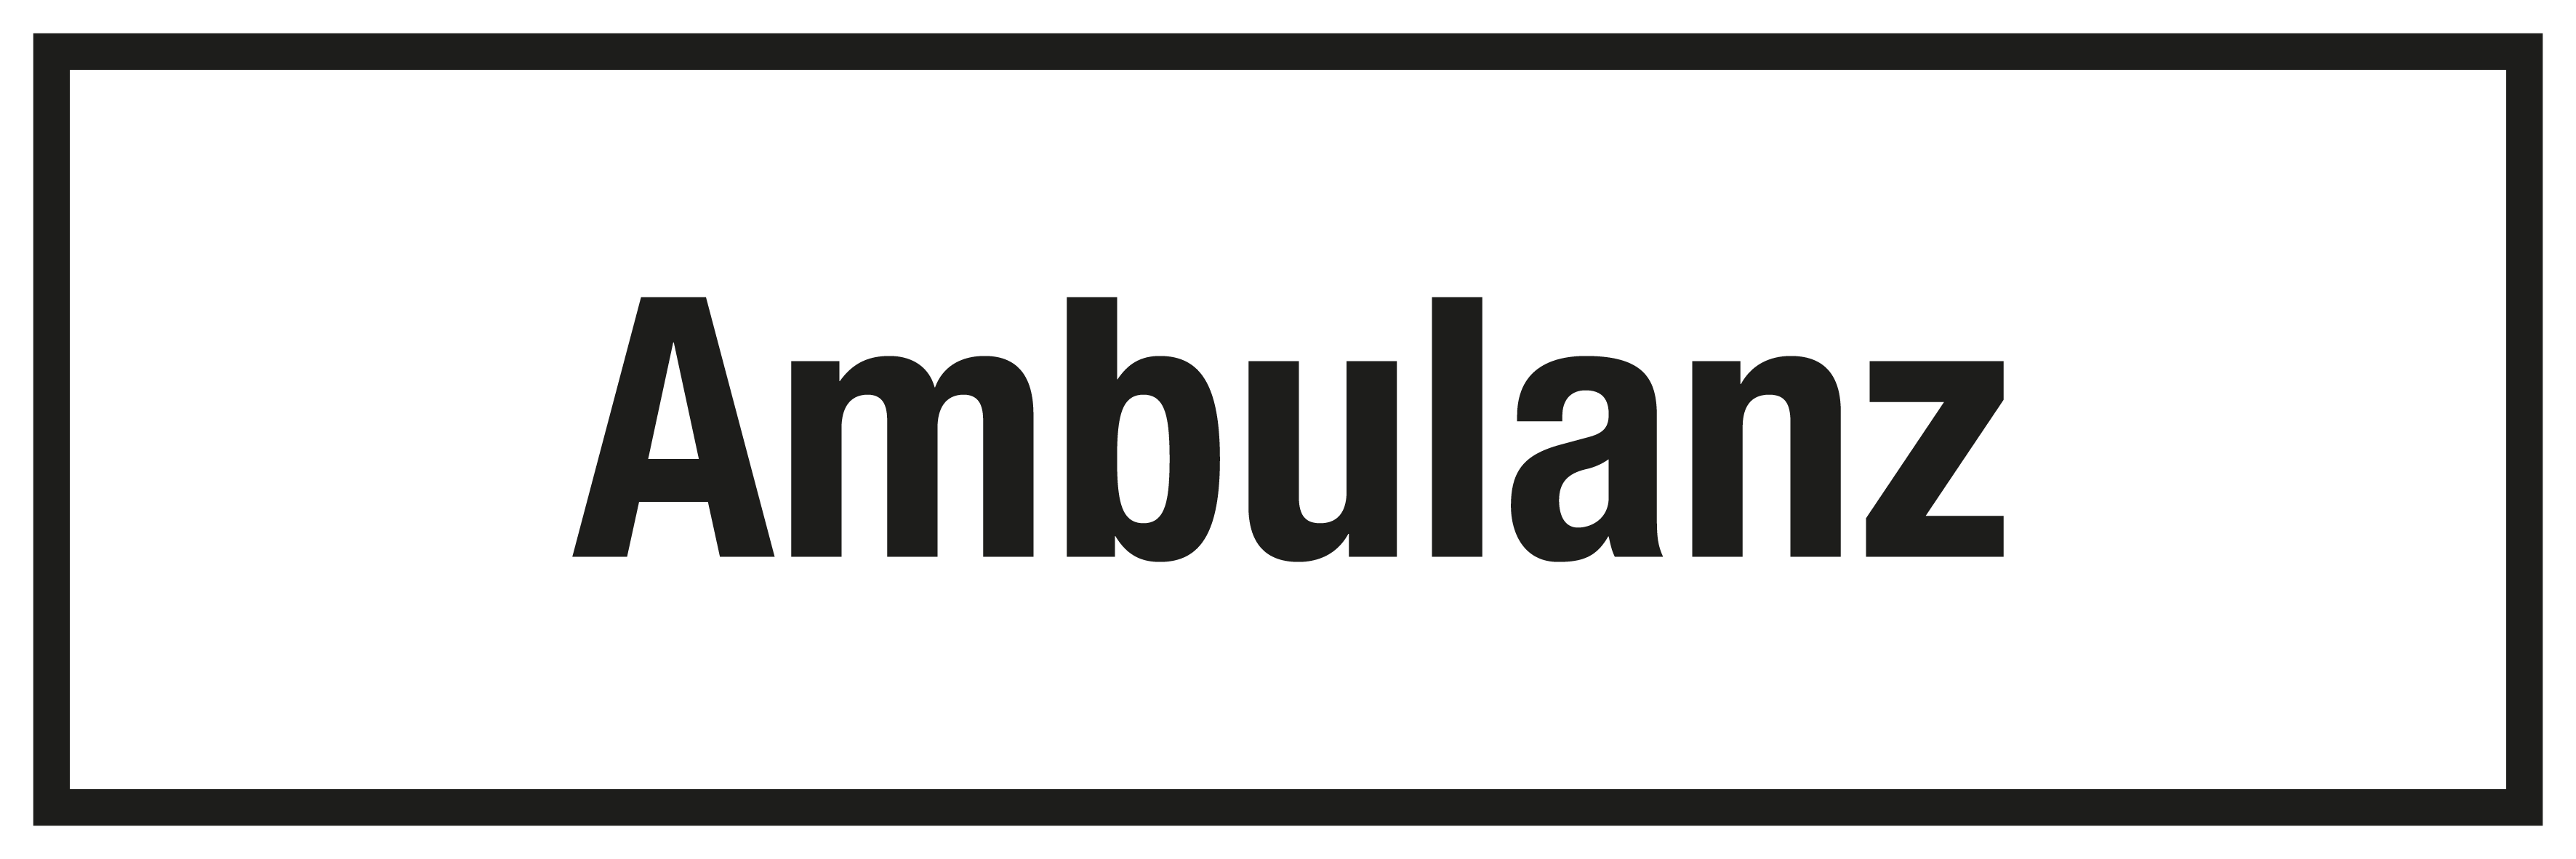 Krankenhaus- und Praxisschild - Ambulanz - Folie Selbstklebend - 10 x 30 cm